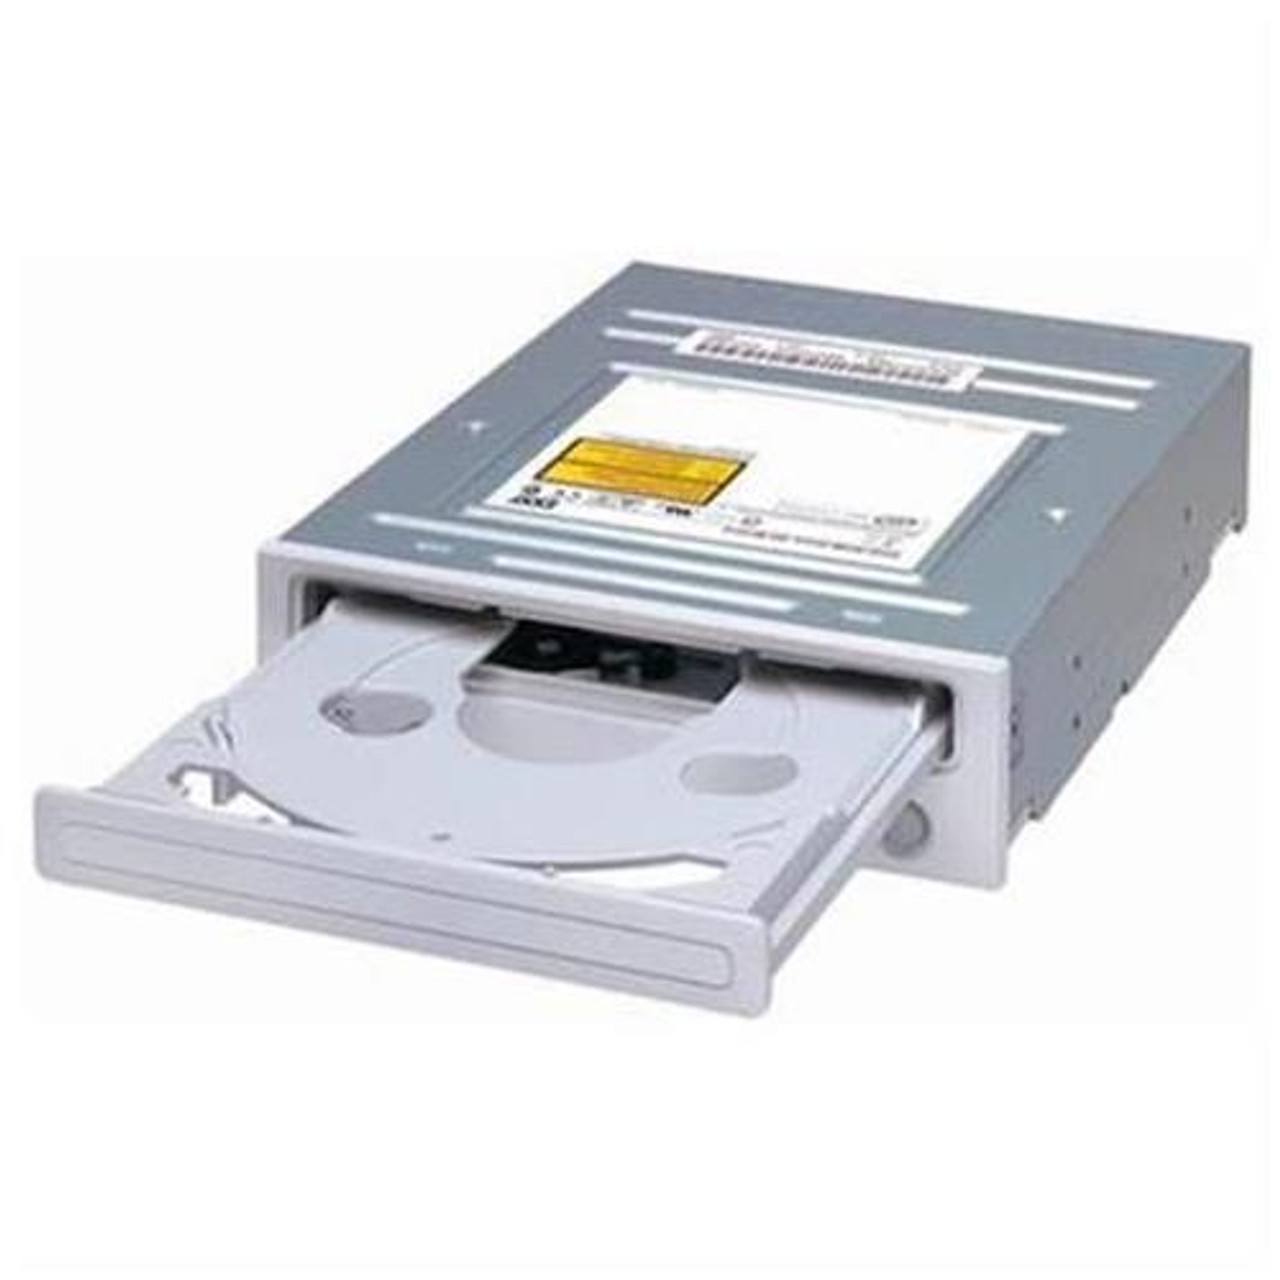 101201 - Gateway 101201 16x dvd-ROM Drive - dvd-ROM - 16x (dvd) - 48x (CD) - EIDE/ATAPI - Internal